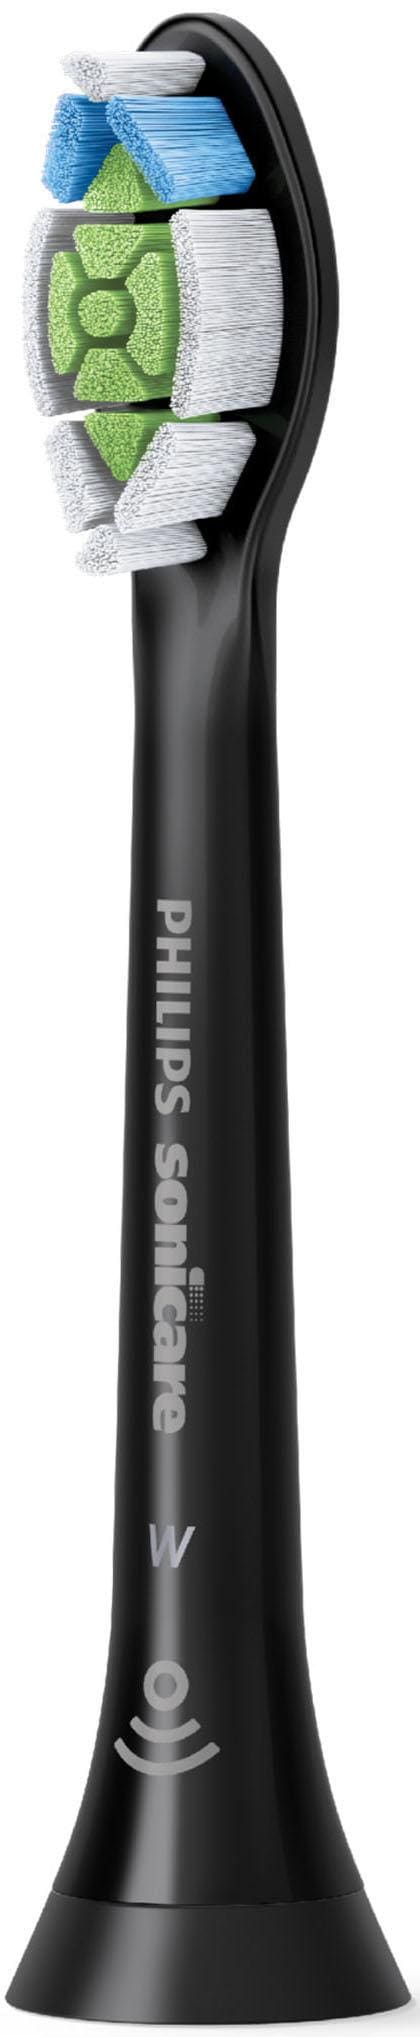 Aufsteckbürsten Rechnung Standard«, Sonicare »Optimal bestellen White Philips weiße auf Zähne besonders